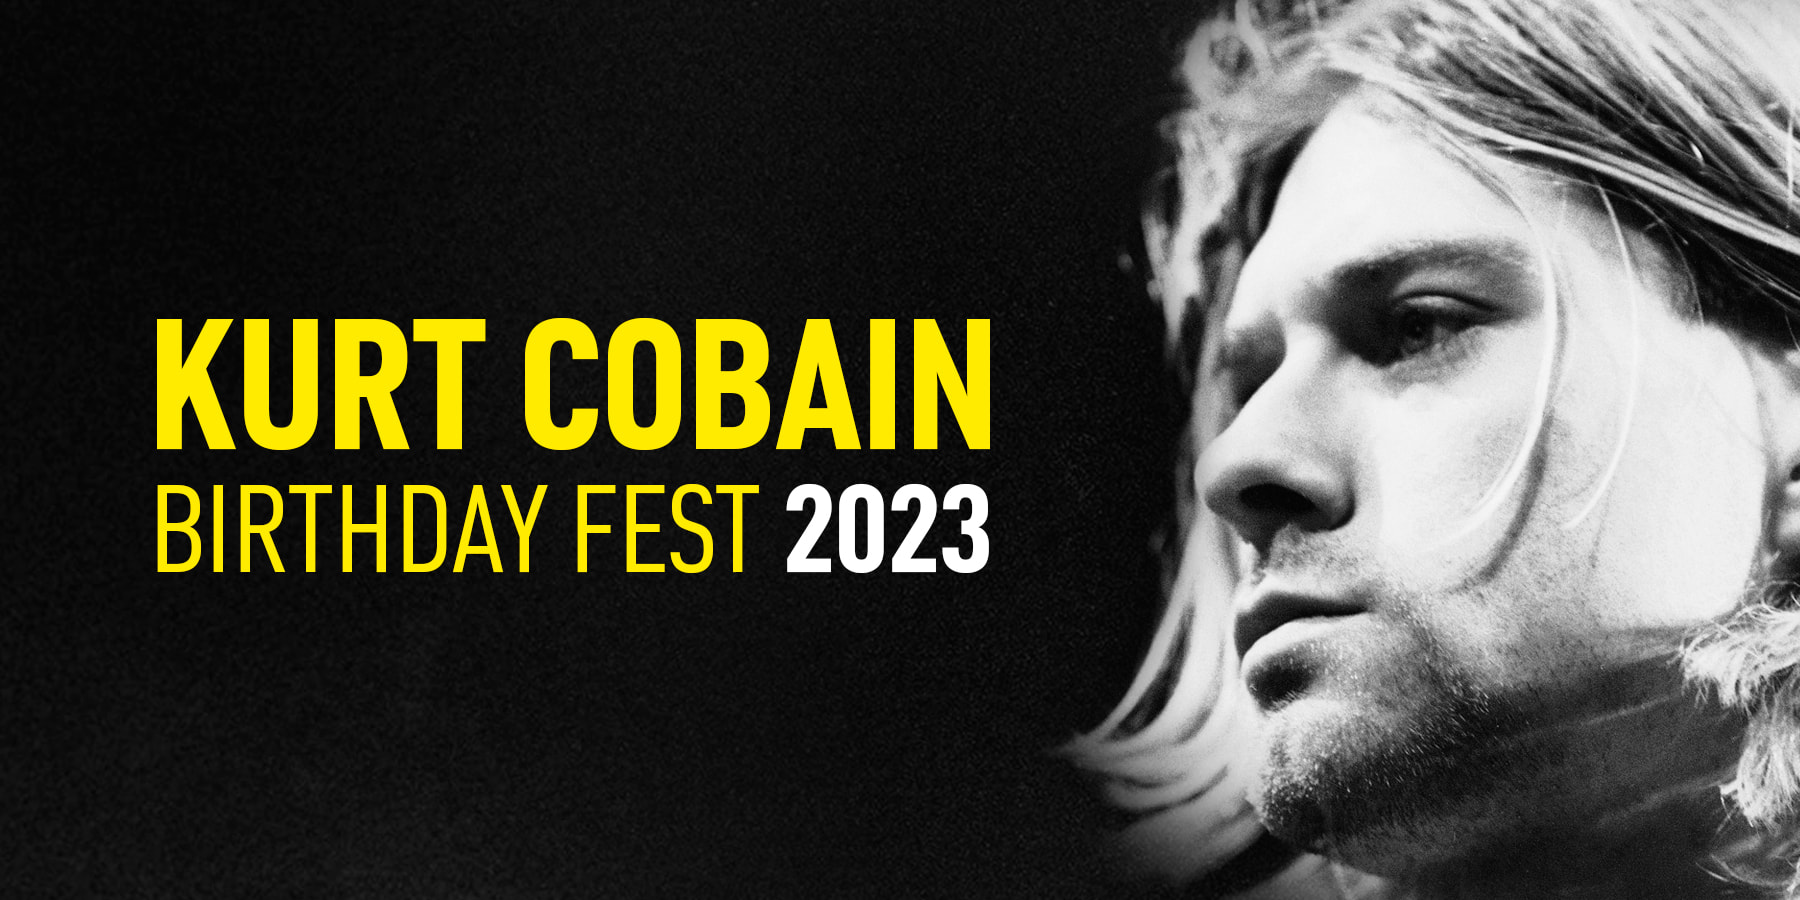 Kurt Cobain Birthday Fest 2023